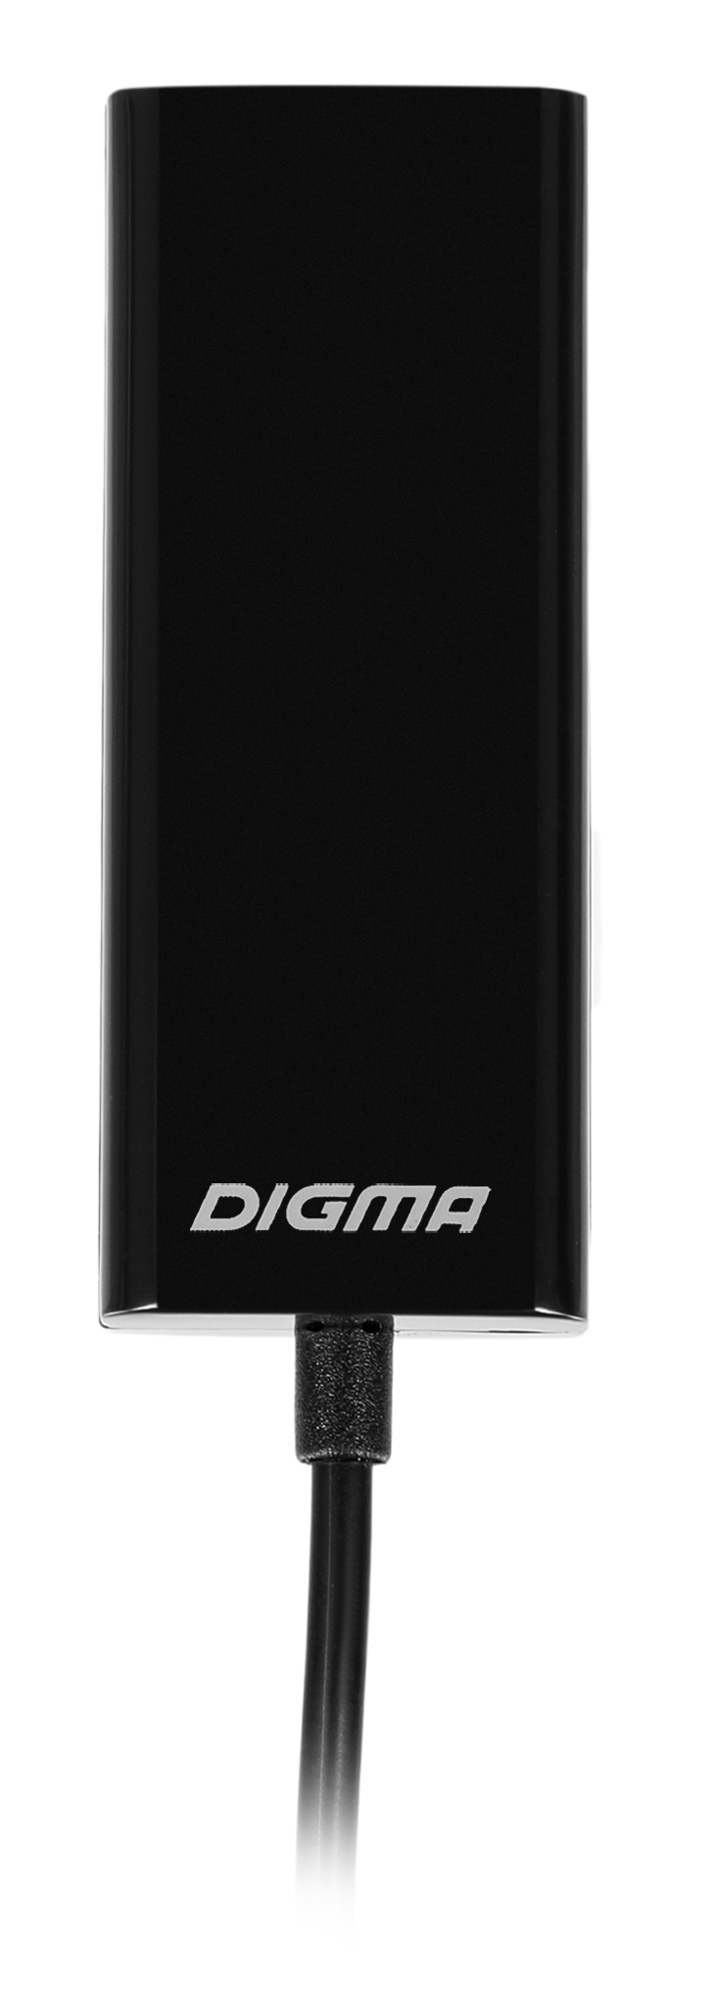 Сетевая карта Digma BU-USB2-LAN100, 1xRJ-45, 100 Мбит/с, USB 2.0, Retail